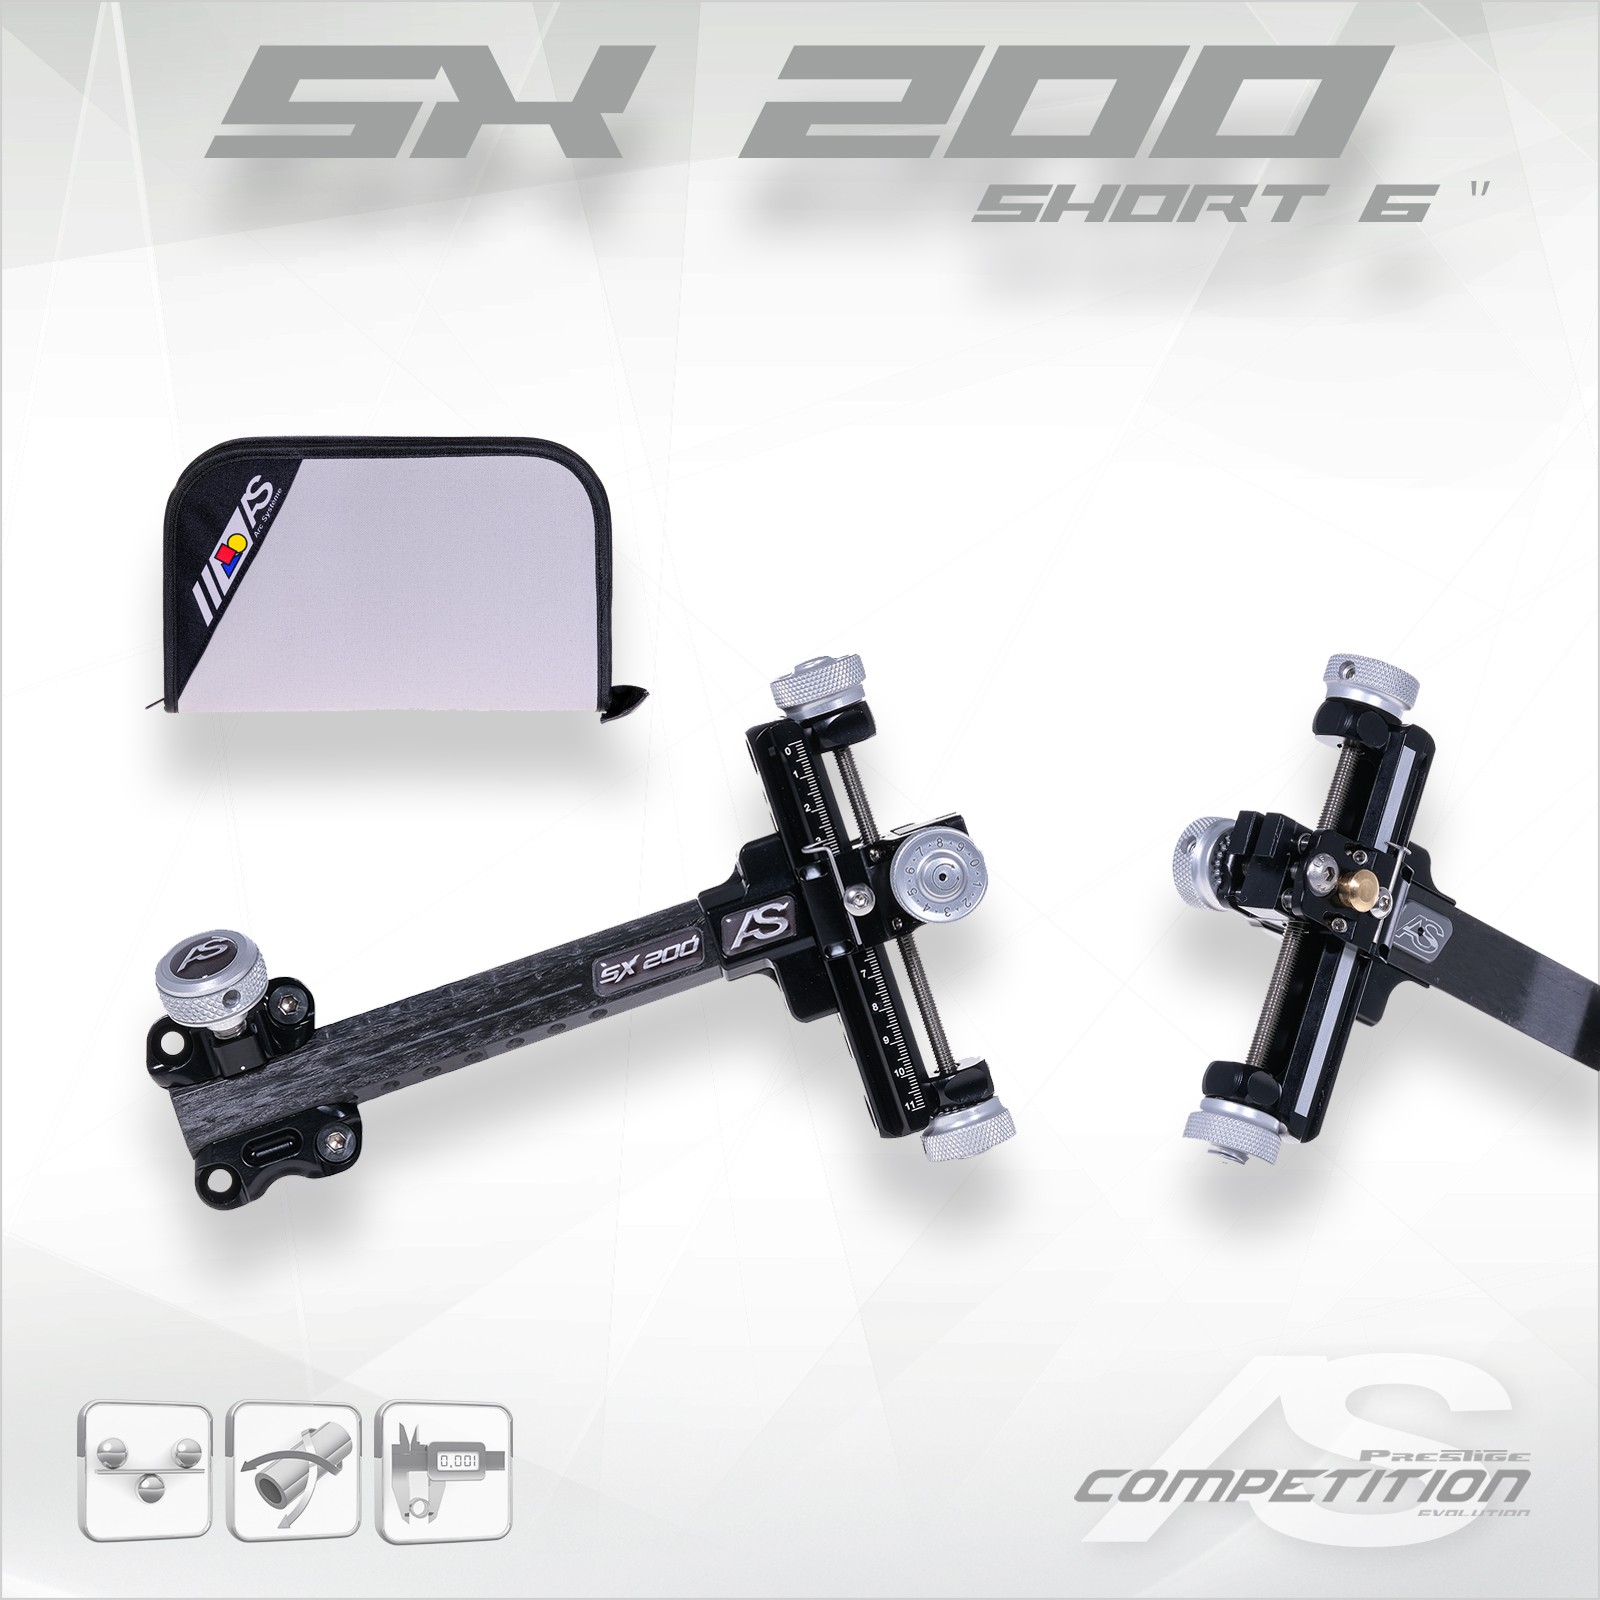 SX200 SHORT 6